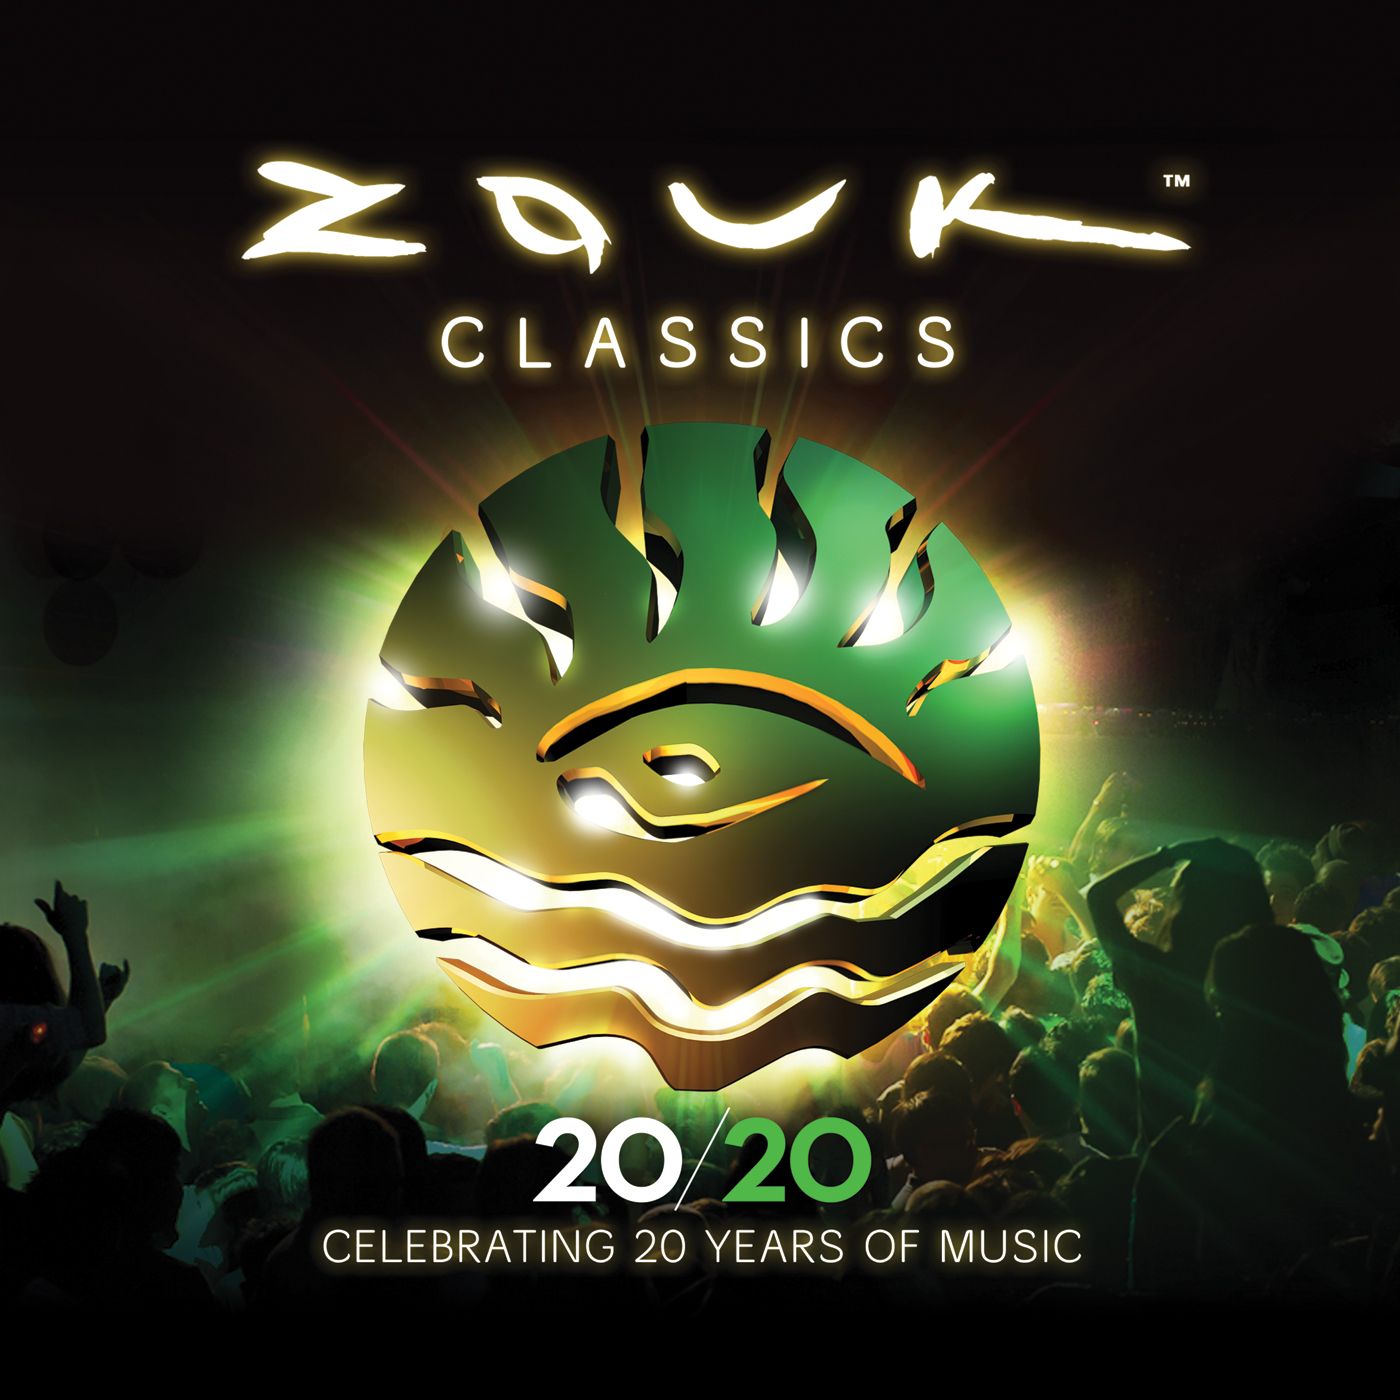 Zouk Classics - Celebrating 20 Years of Music